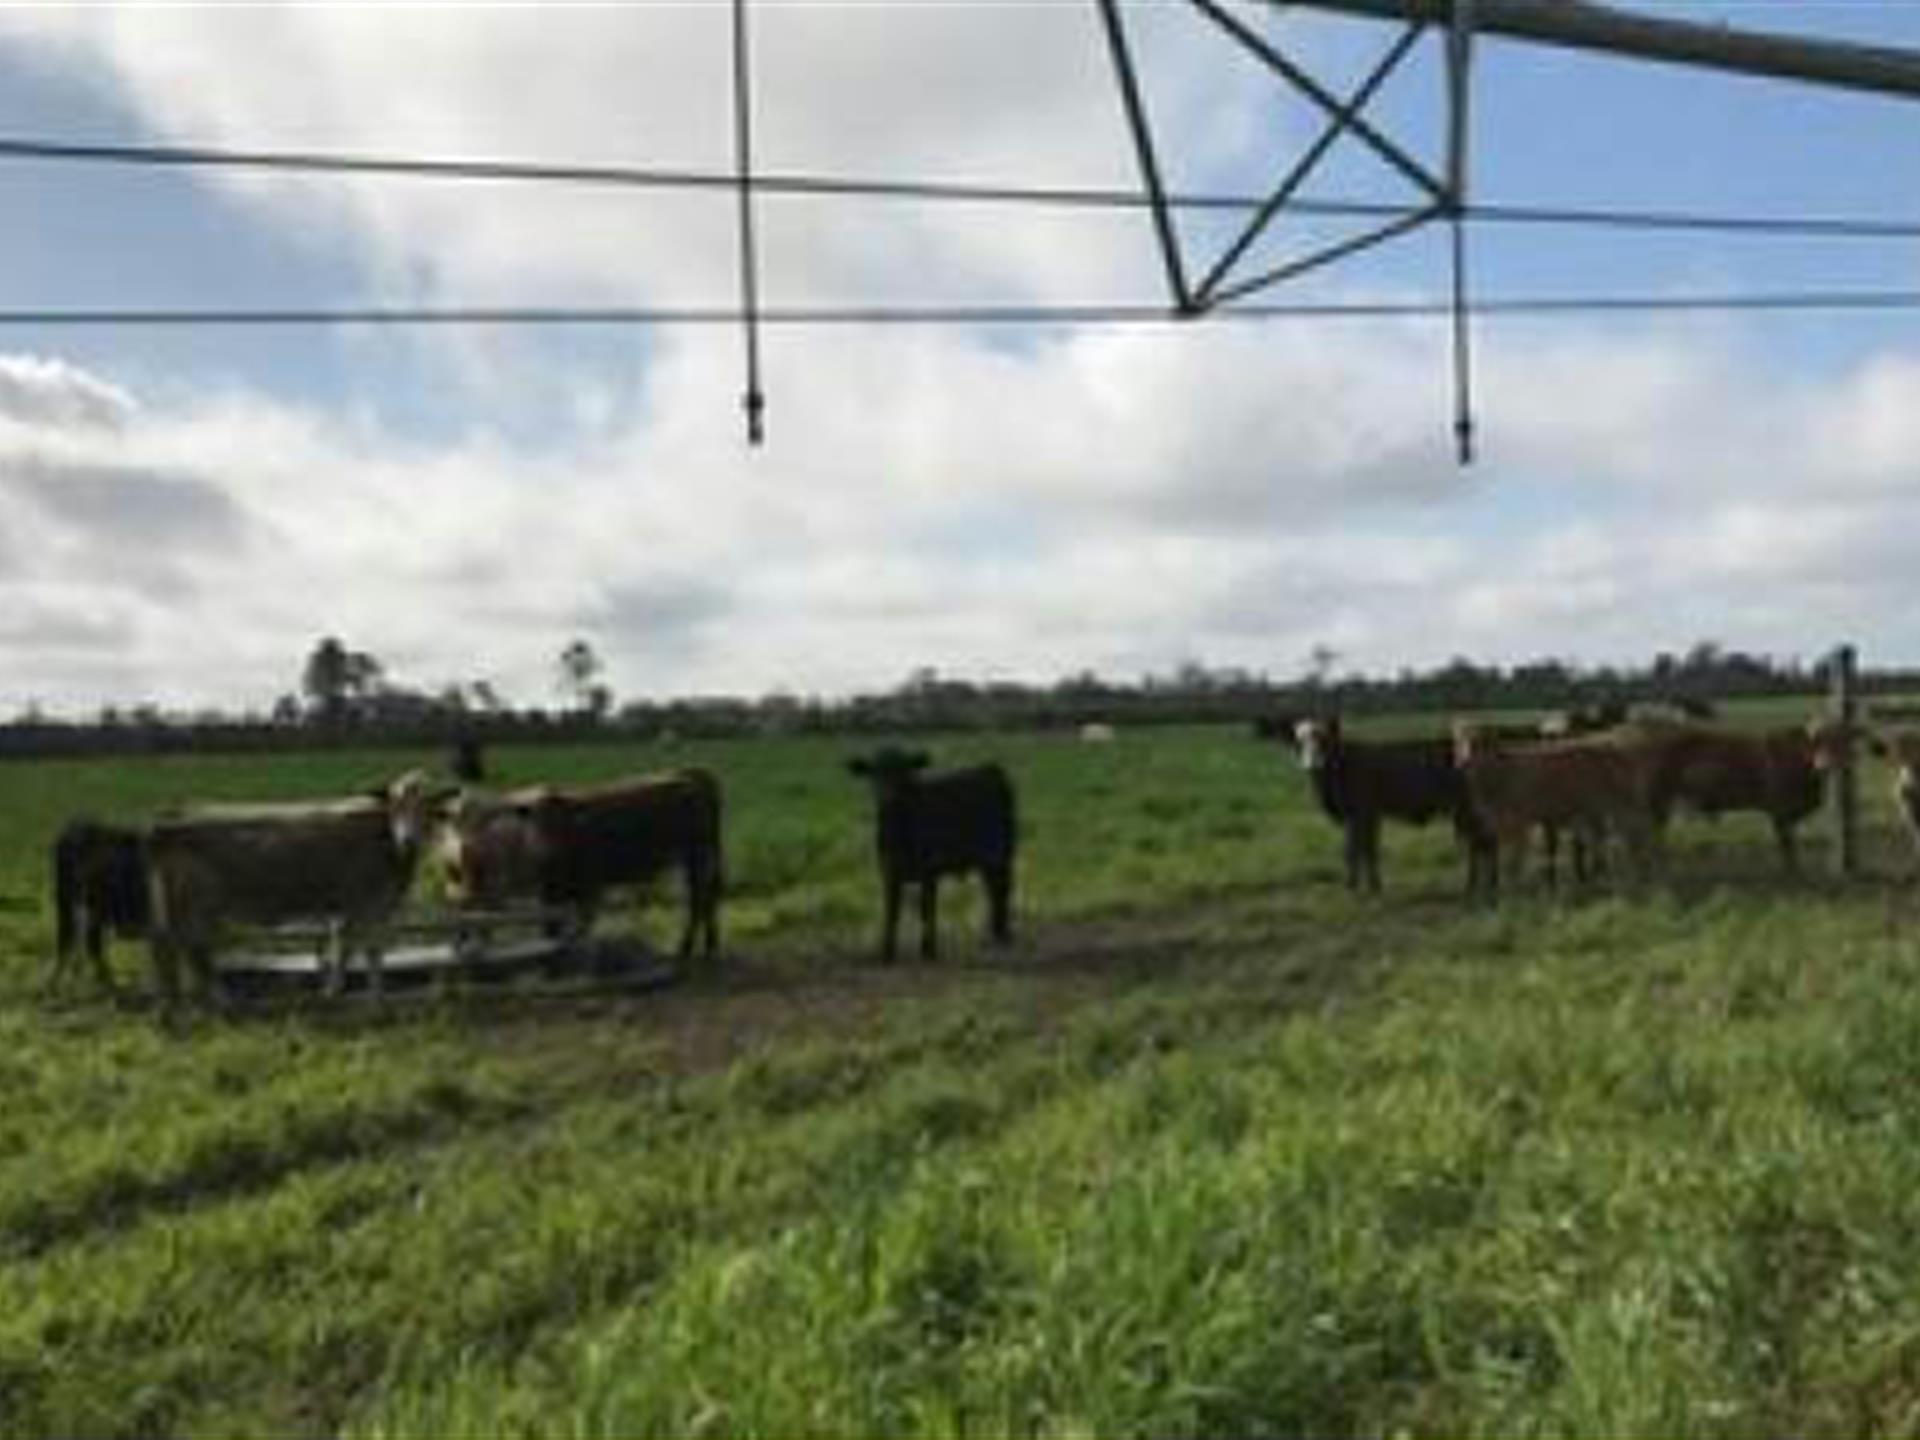 496 Acre Working Cattle Farm : Farm for Sale : Live Oak : Suwannee ...